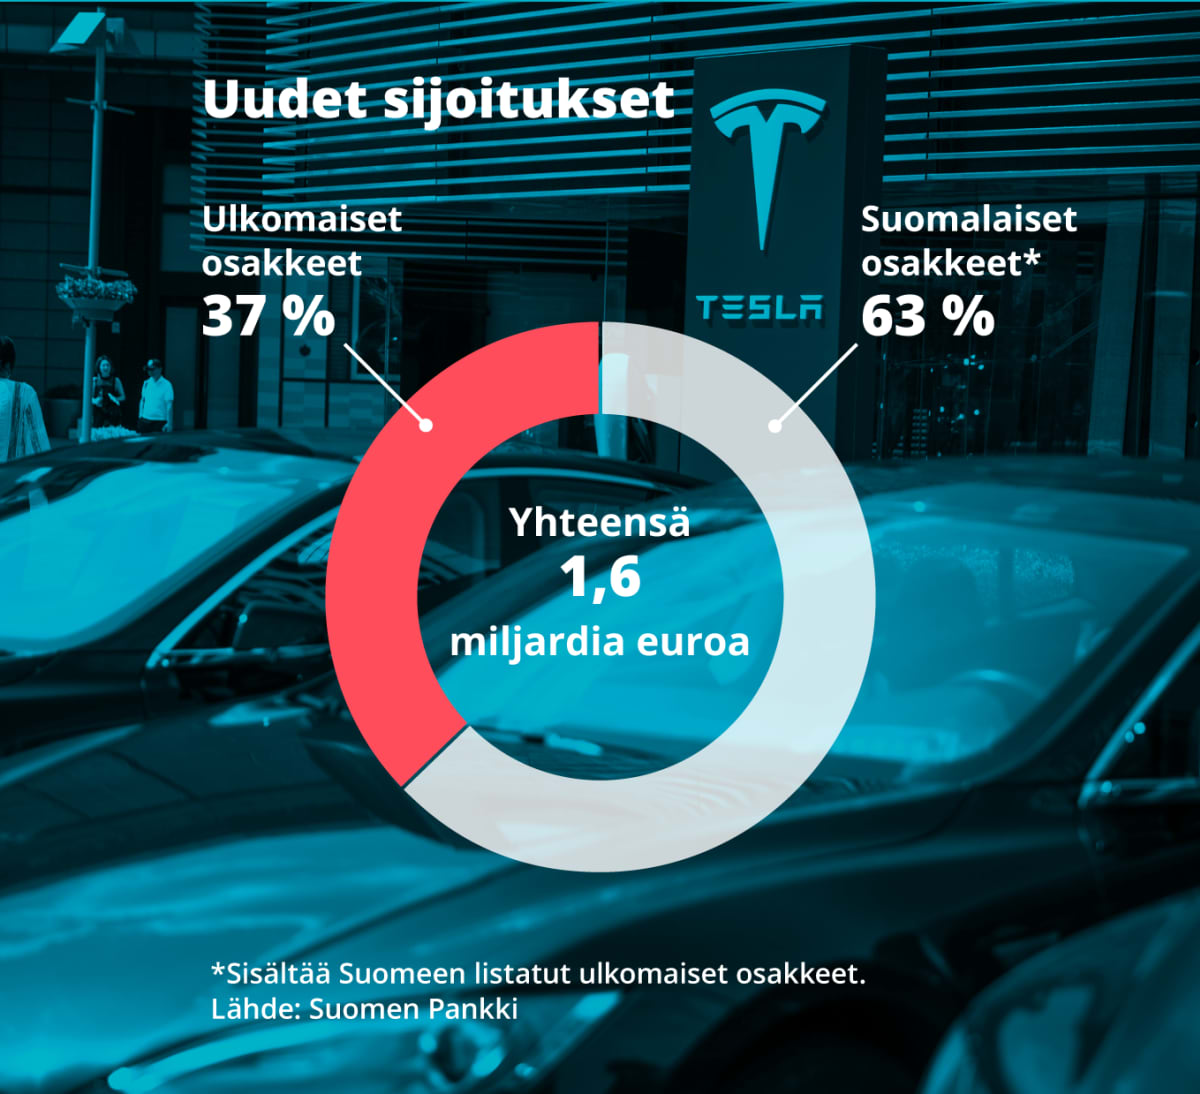 Grafiikka näyttää ulkomaisten osakkeiden (37 %) ja suomalaisten osakkeiden (63 %, sisältäen Suomeen listatut ulkomaiset osakkeet) osuuden suomalaisten uusista sijoituksista.